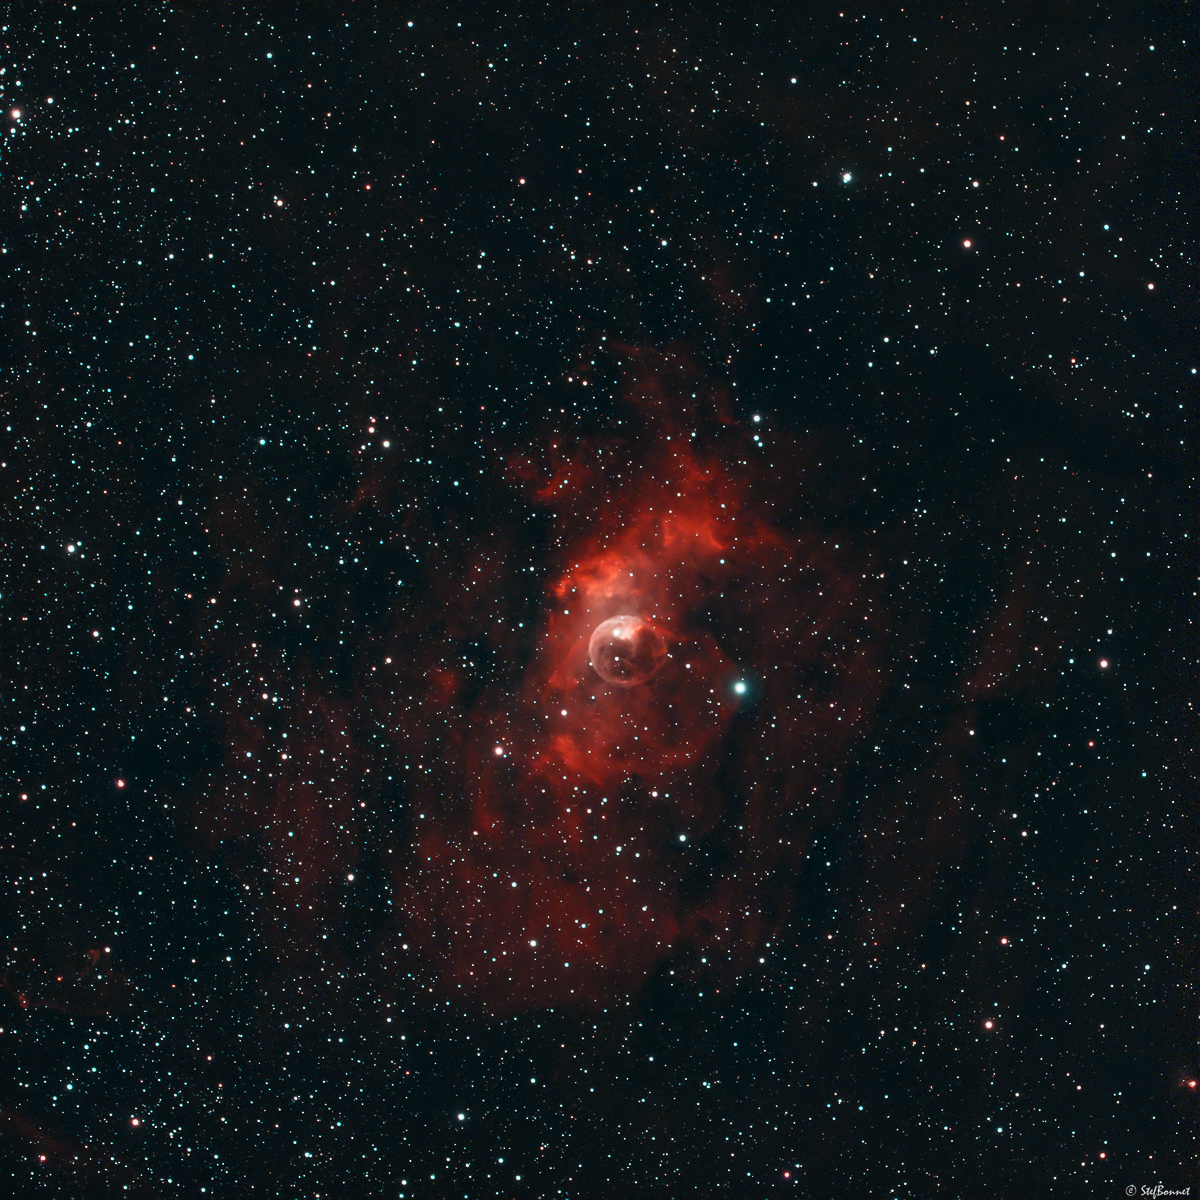 62f8ec642d03d_NGC7635Bulle-Web-1.jpg.5825cd63948a58895878ab2ff97e5635.jpg